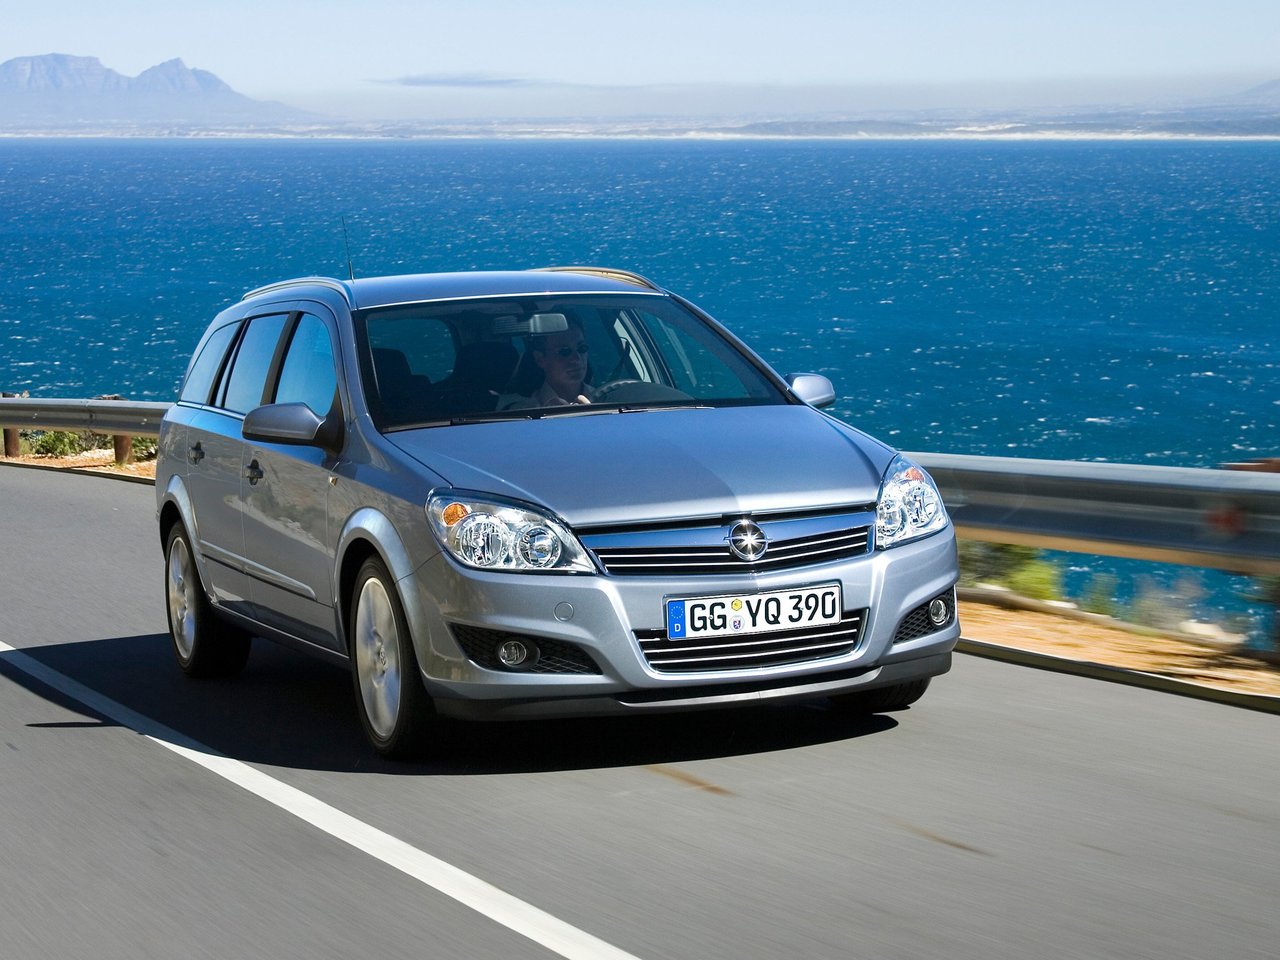 Расход газа шести комплектаций универсала пять дверей Opel Astra. Разница стоимости заправки газом и бензином. Автономный пробег до и после установки ГБО.